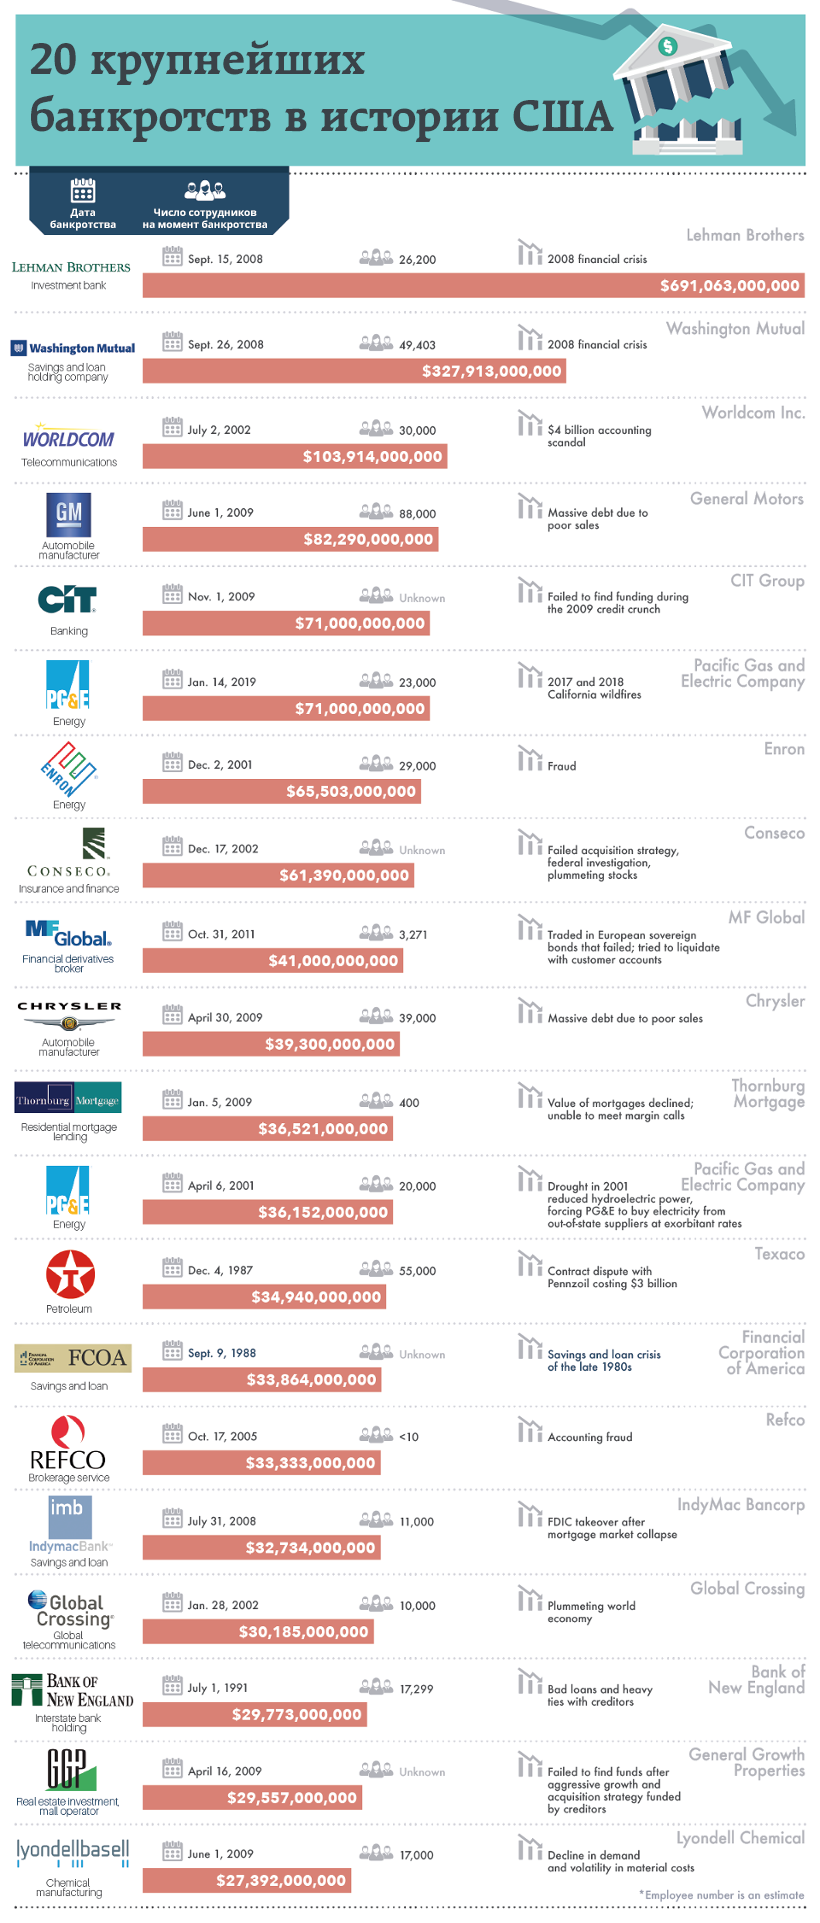 20 крупнейших банкротств в истории США.